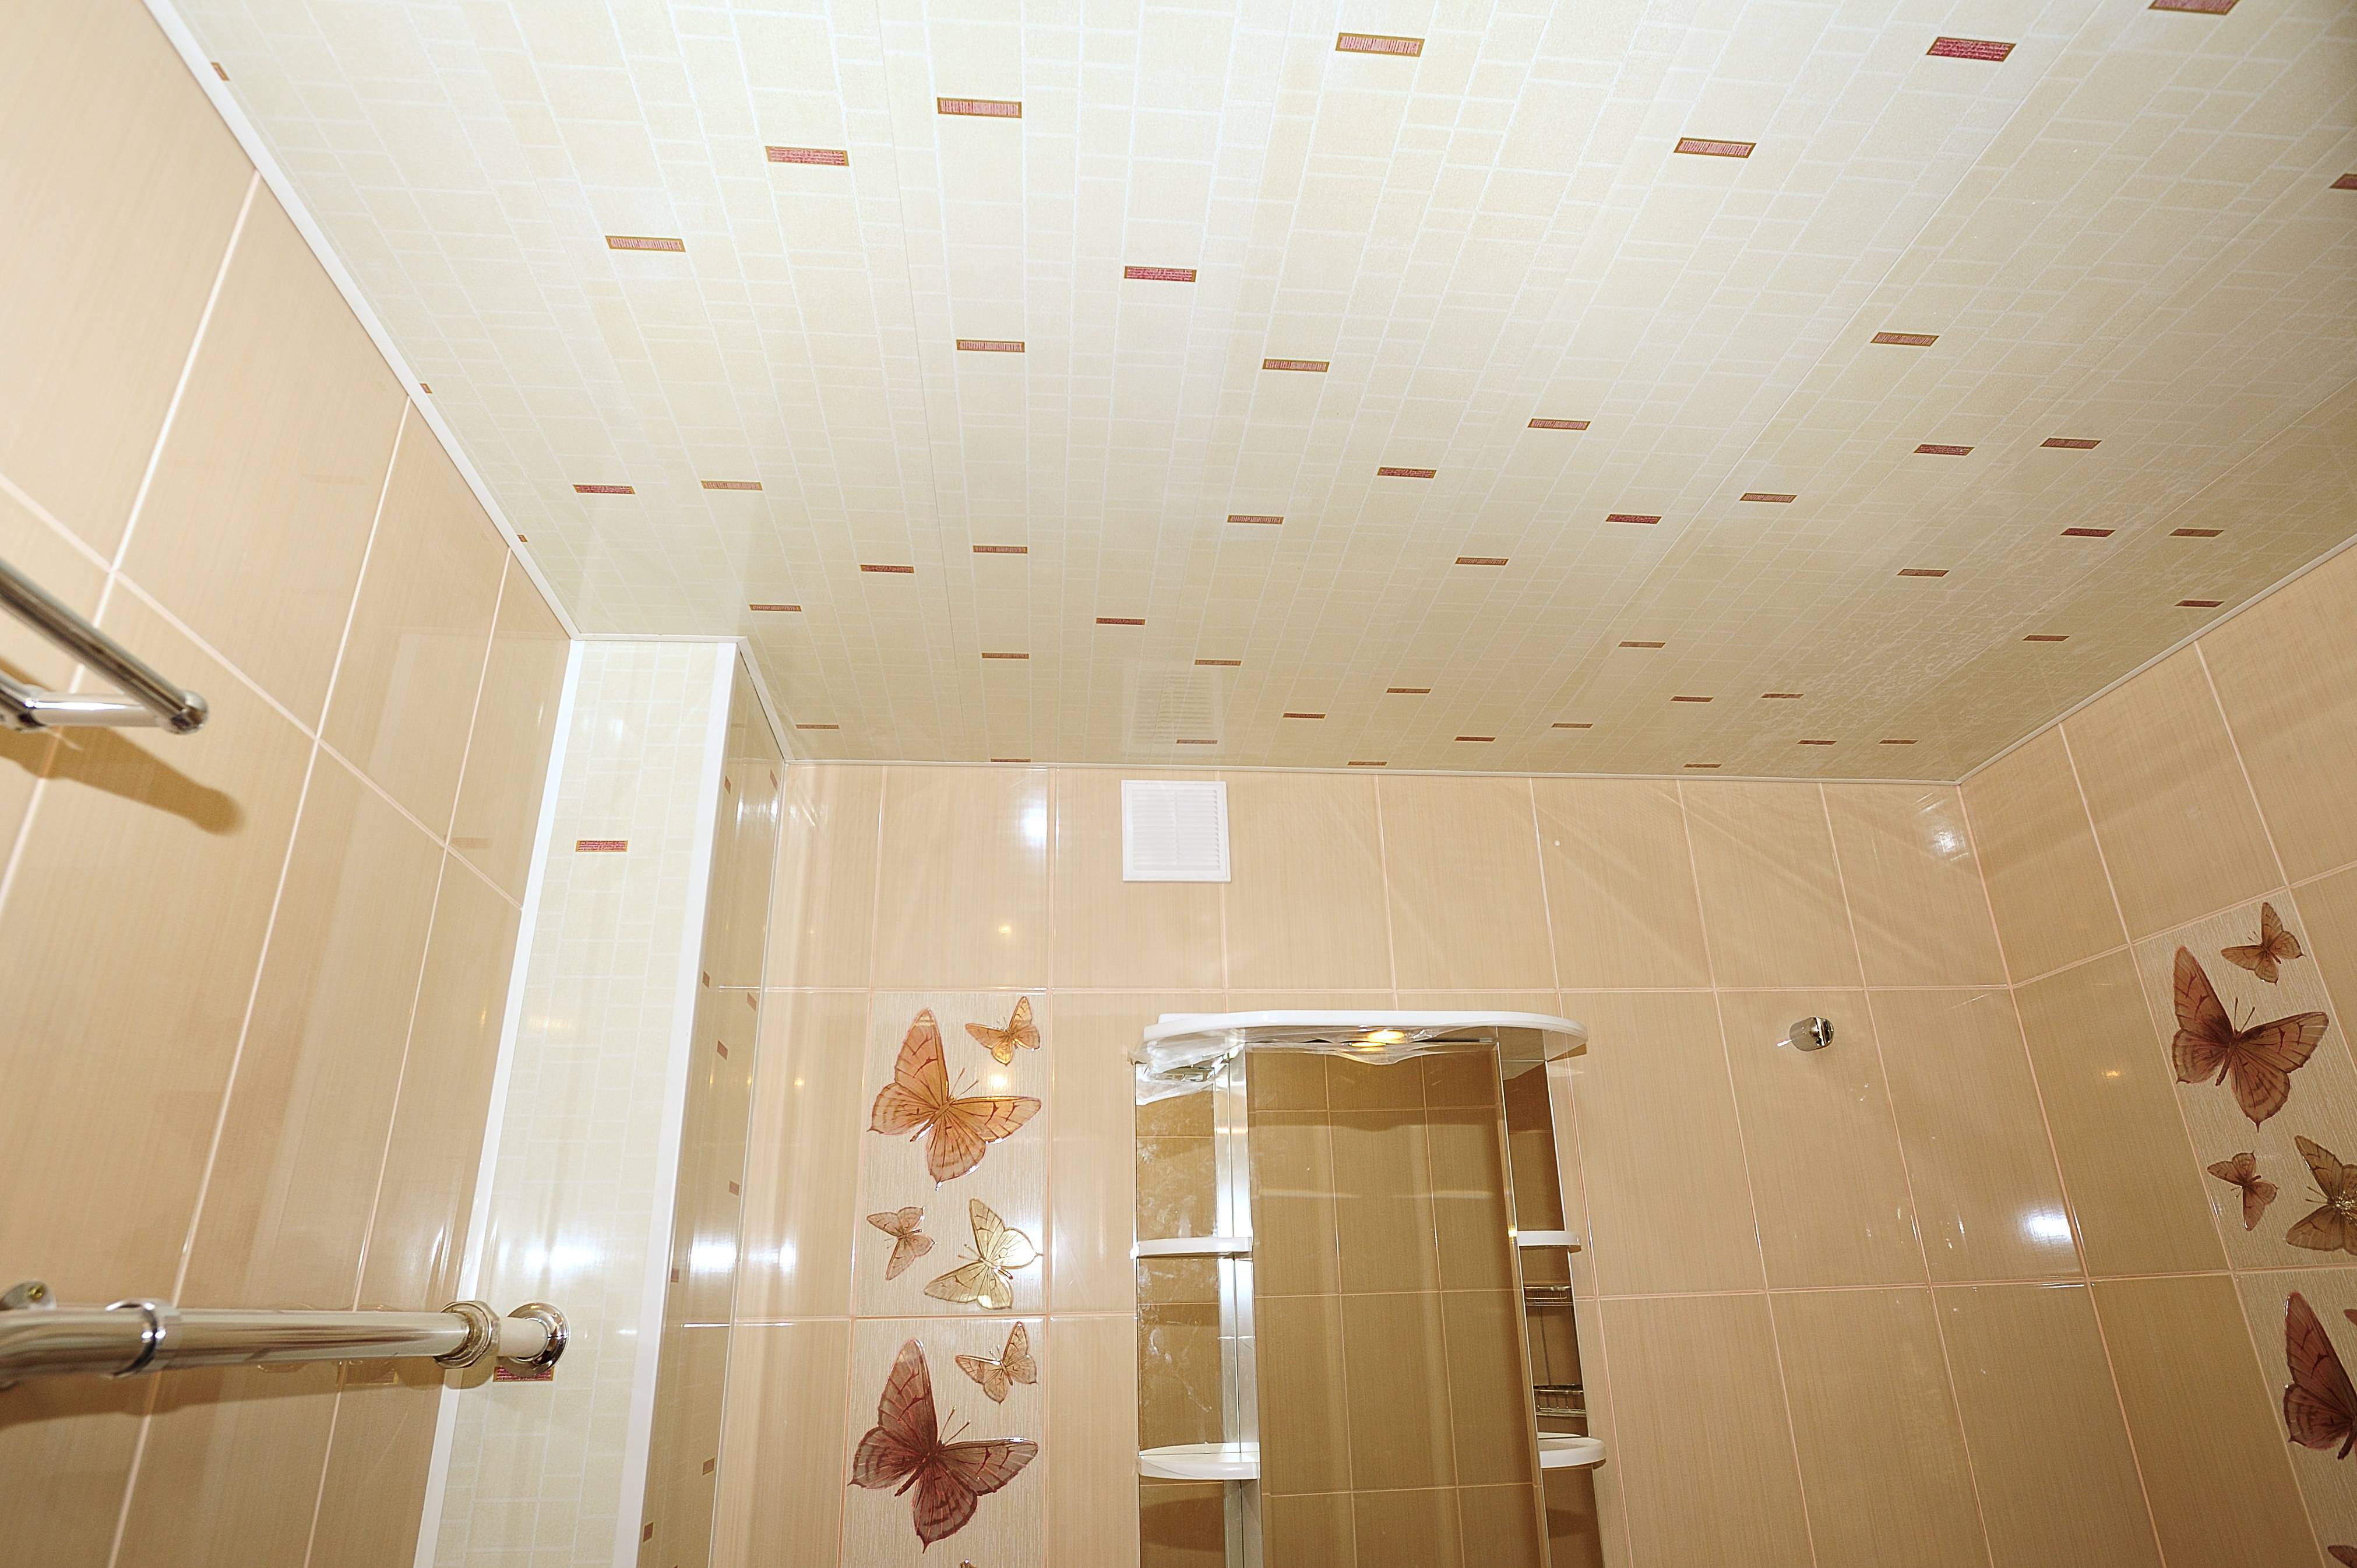 Как сделать потолок в ванной из панелей. Пластиковый потолок в ванную. Пластиковый потолок в ванной. Пластиковый потолок в ванной комнате. Потолок в ванной из пластиковых панелей.